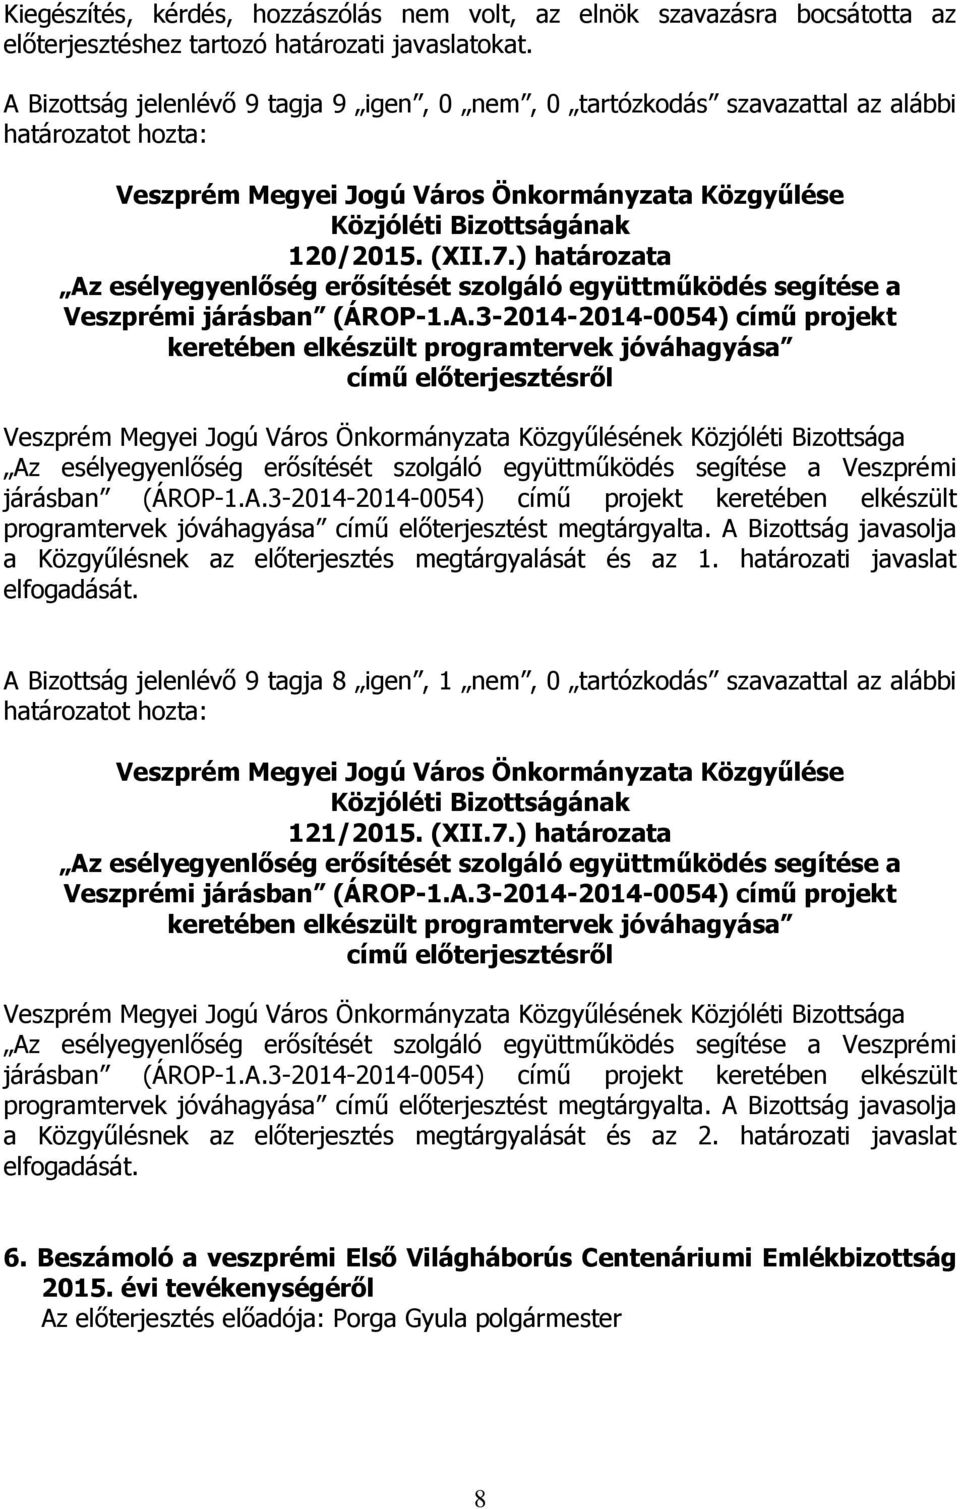 ) határozata Az esélyegyenlőség erősítését szolgáló együttműködés segítése a Veszprémi járásban (ÁROP-1.A.3-2014-2014-0054) című projekt keretében elkészült programtervek jóváhagyása Az esélyegyenlőség erősítését szolgáló együttműködés segítése a Veszprémi járásban (ÁROP-1.